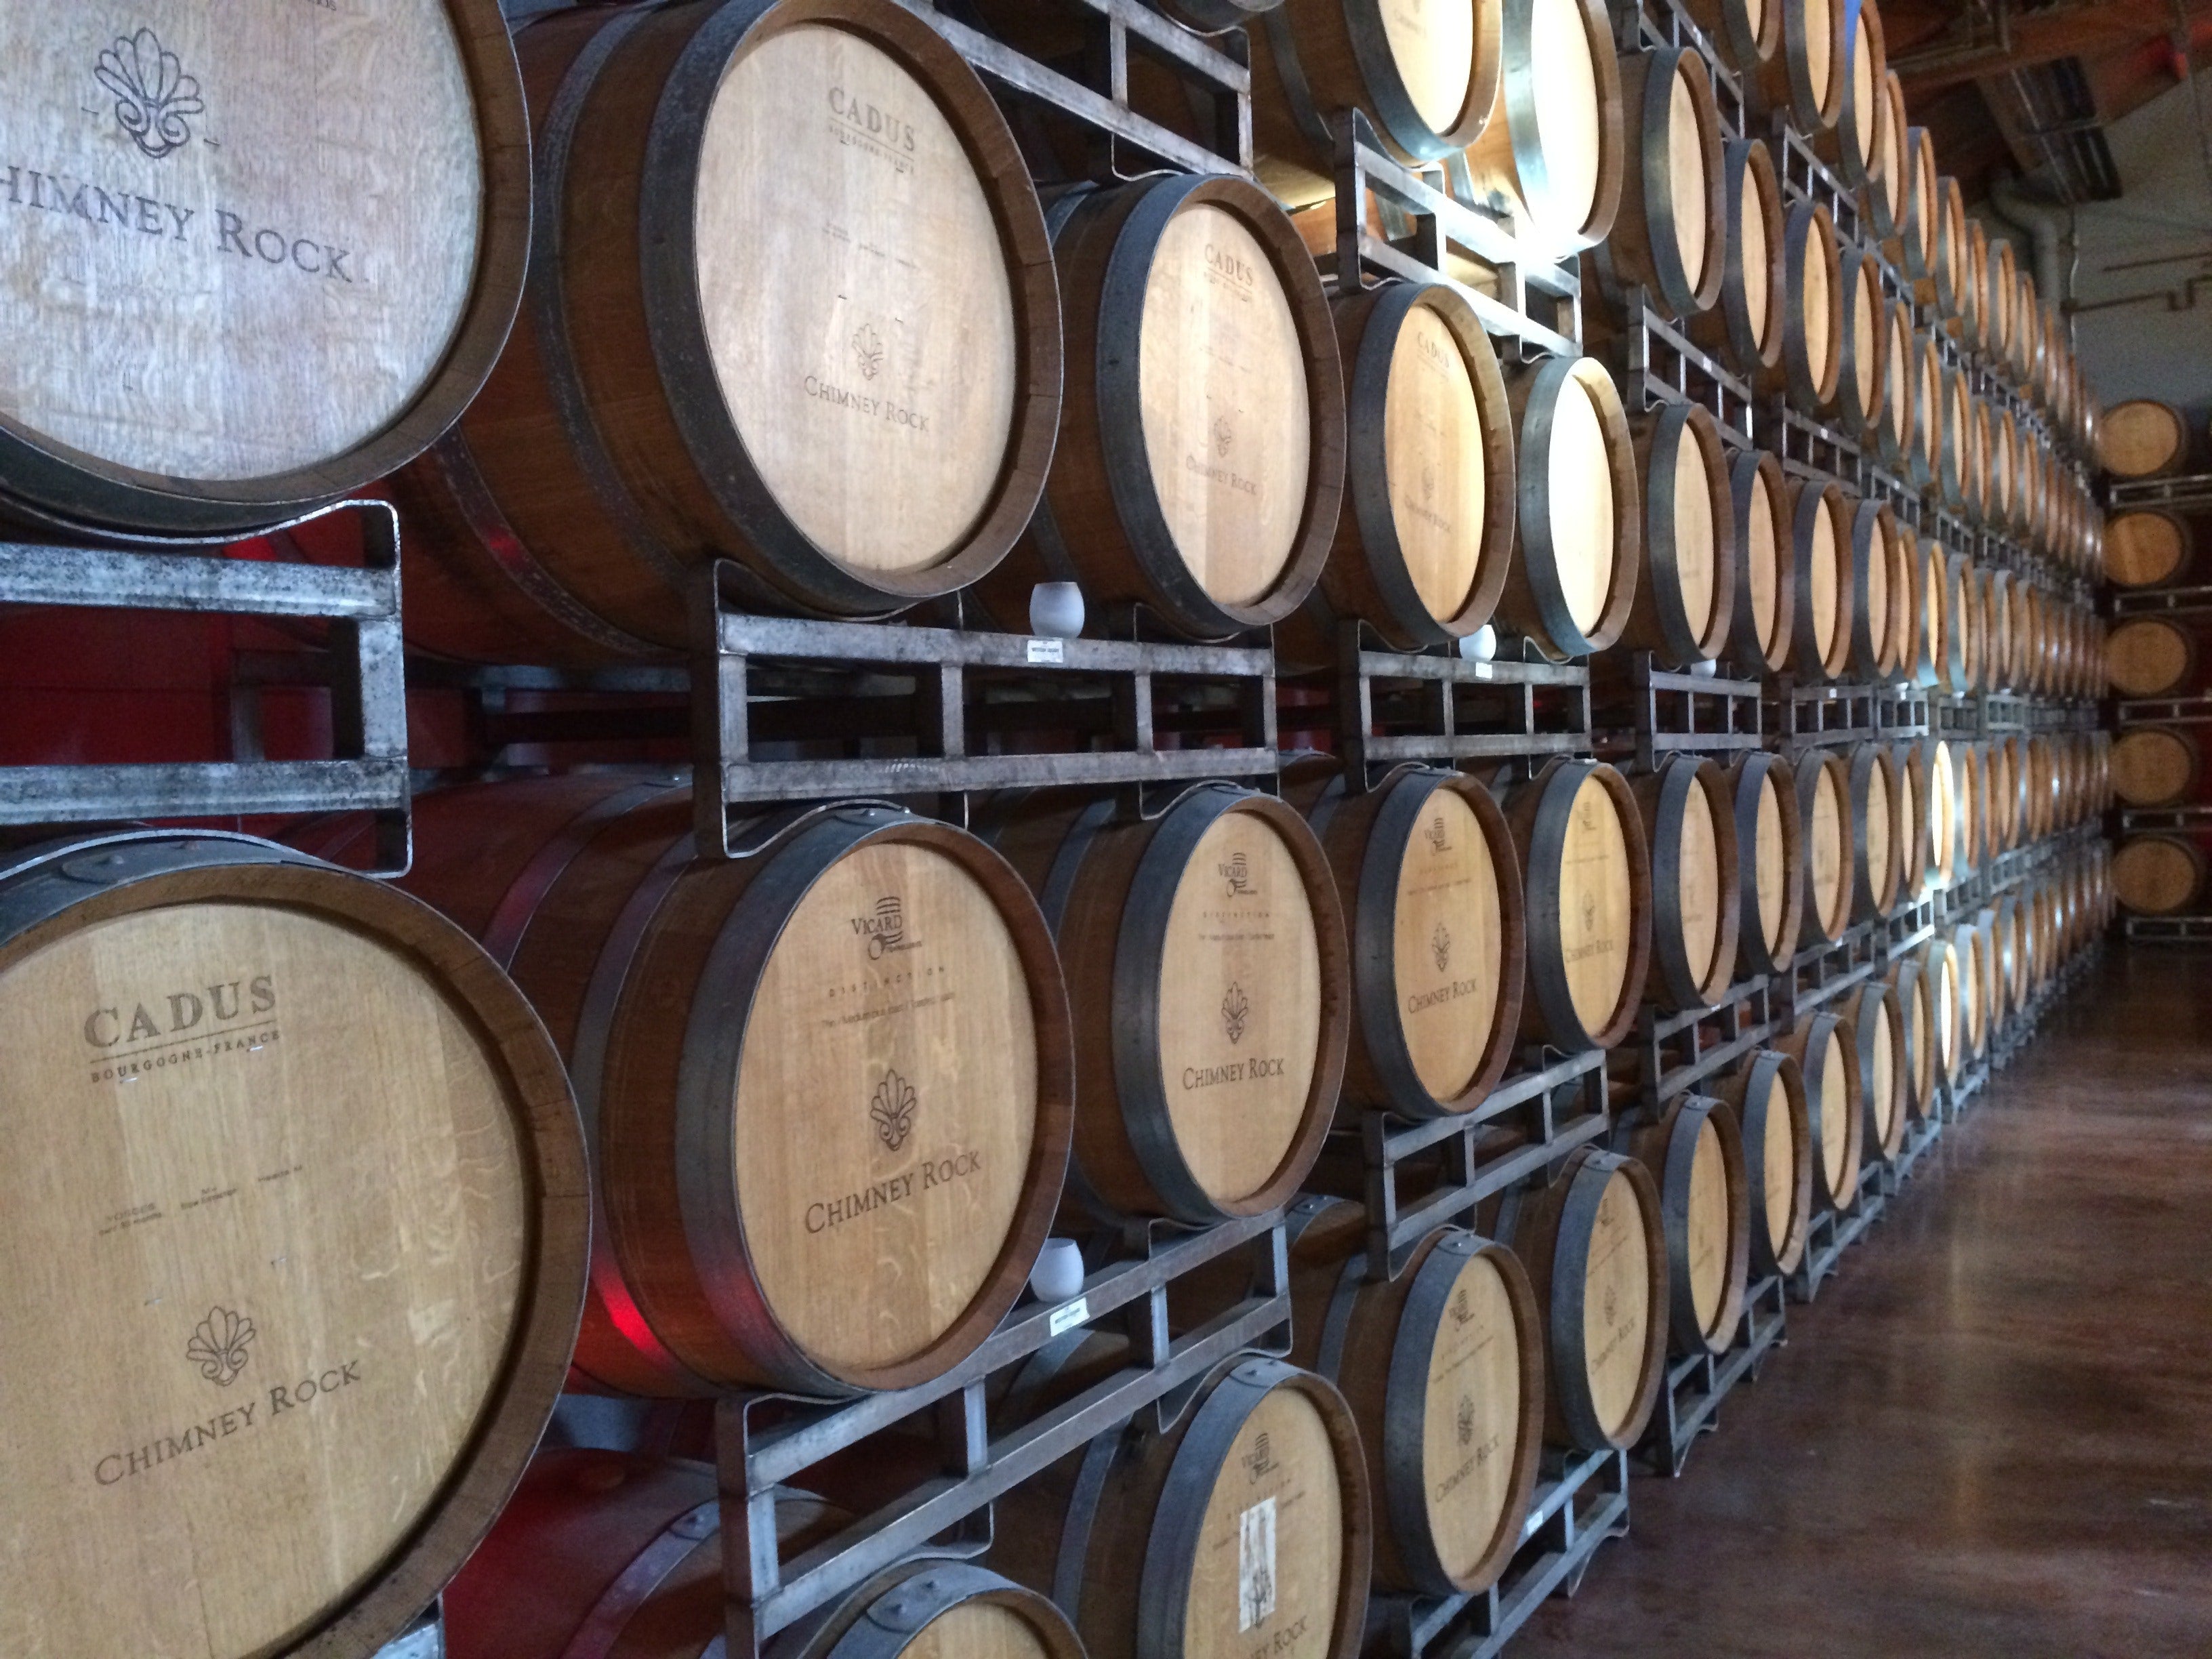 Votre cave à vin spécialiste de l'AOC Ventoux à Carpentras. (Re)découvrez des producteurs et vignerons d'exception, en exclusivité pour certains